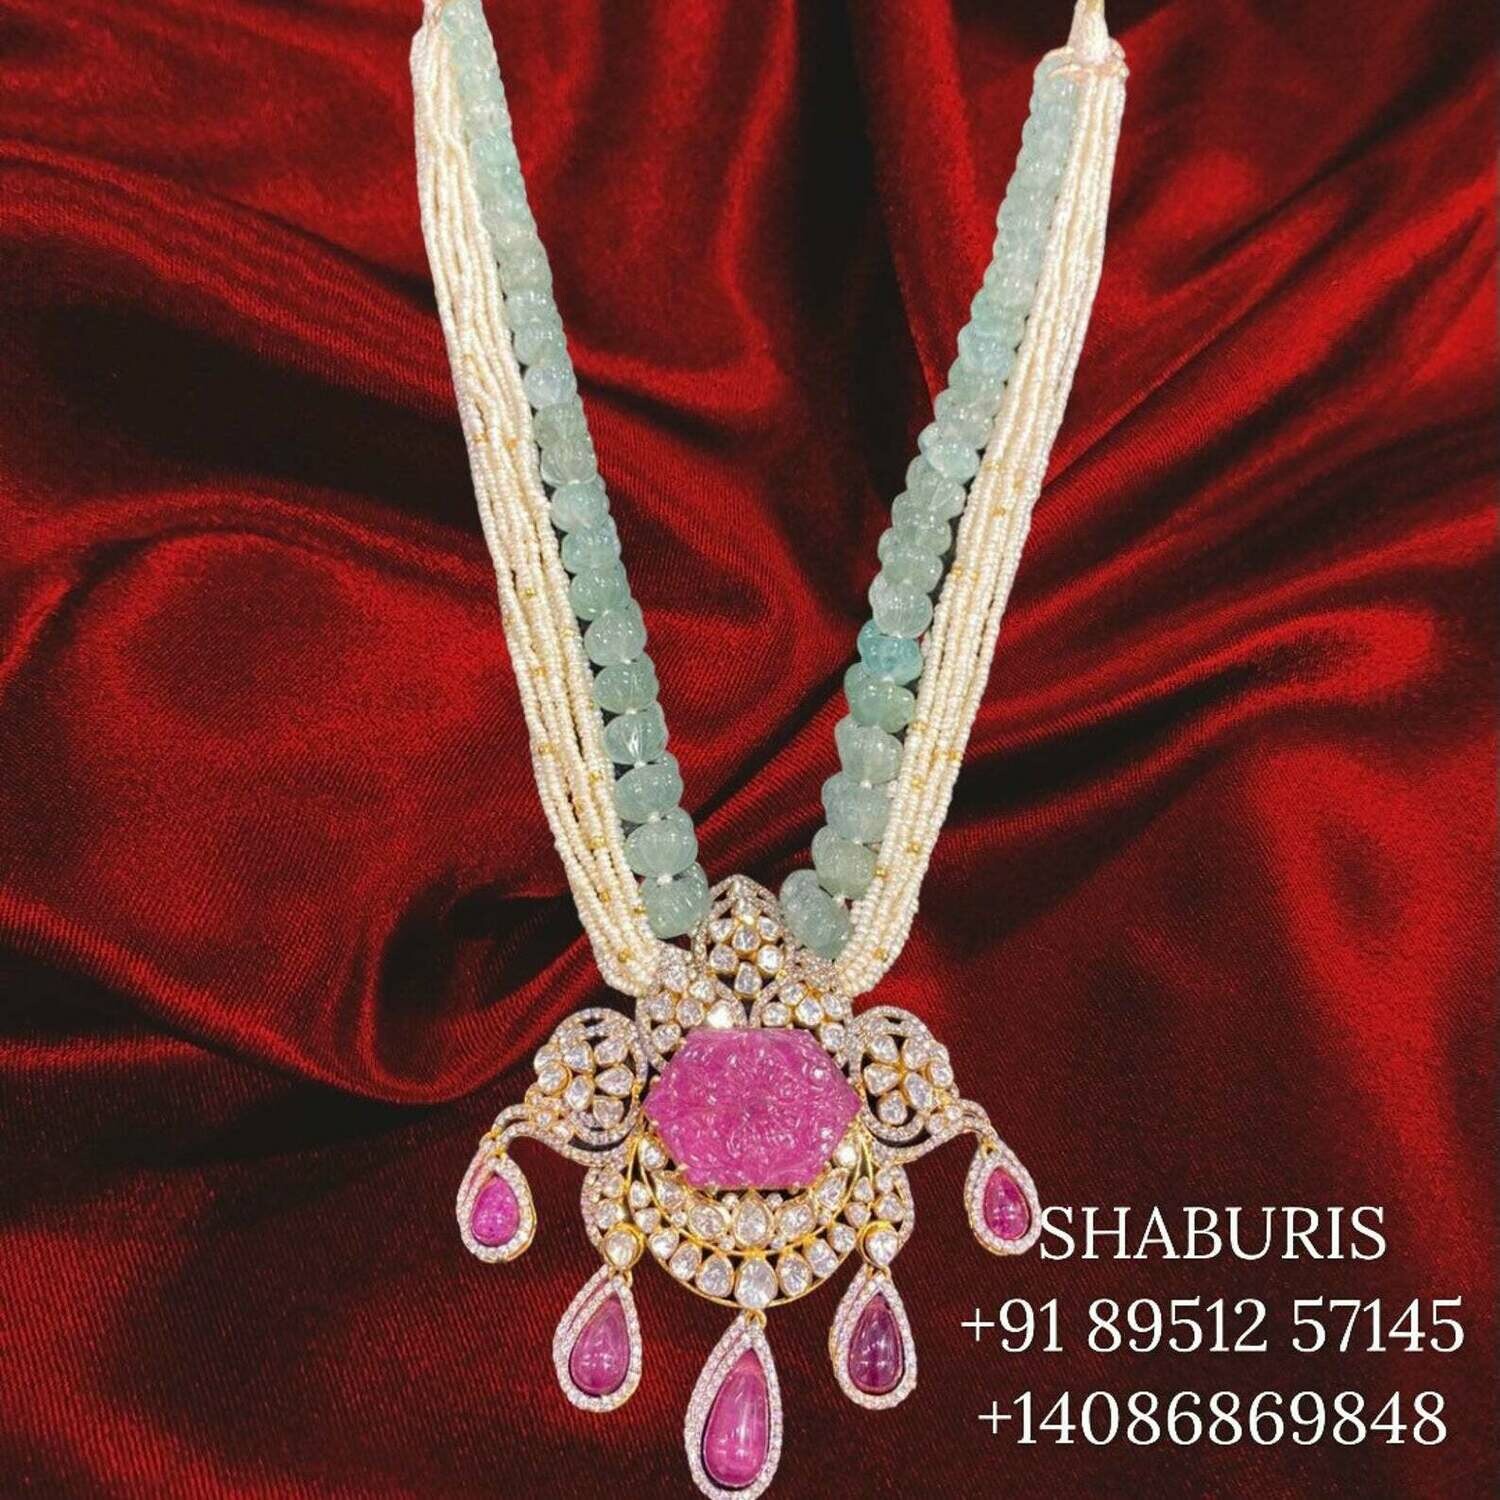 Polki set, Moissanite Jewelry indian gold jewelry designs polki bridal sets polki pendant beaded jewelry sets pearl jewelry sets - SHABURIS